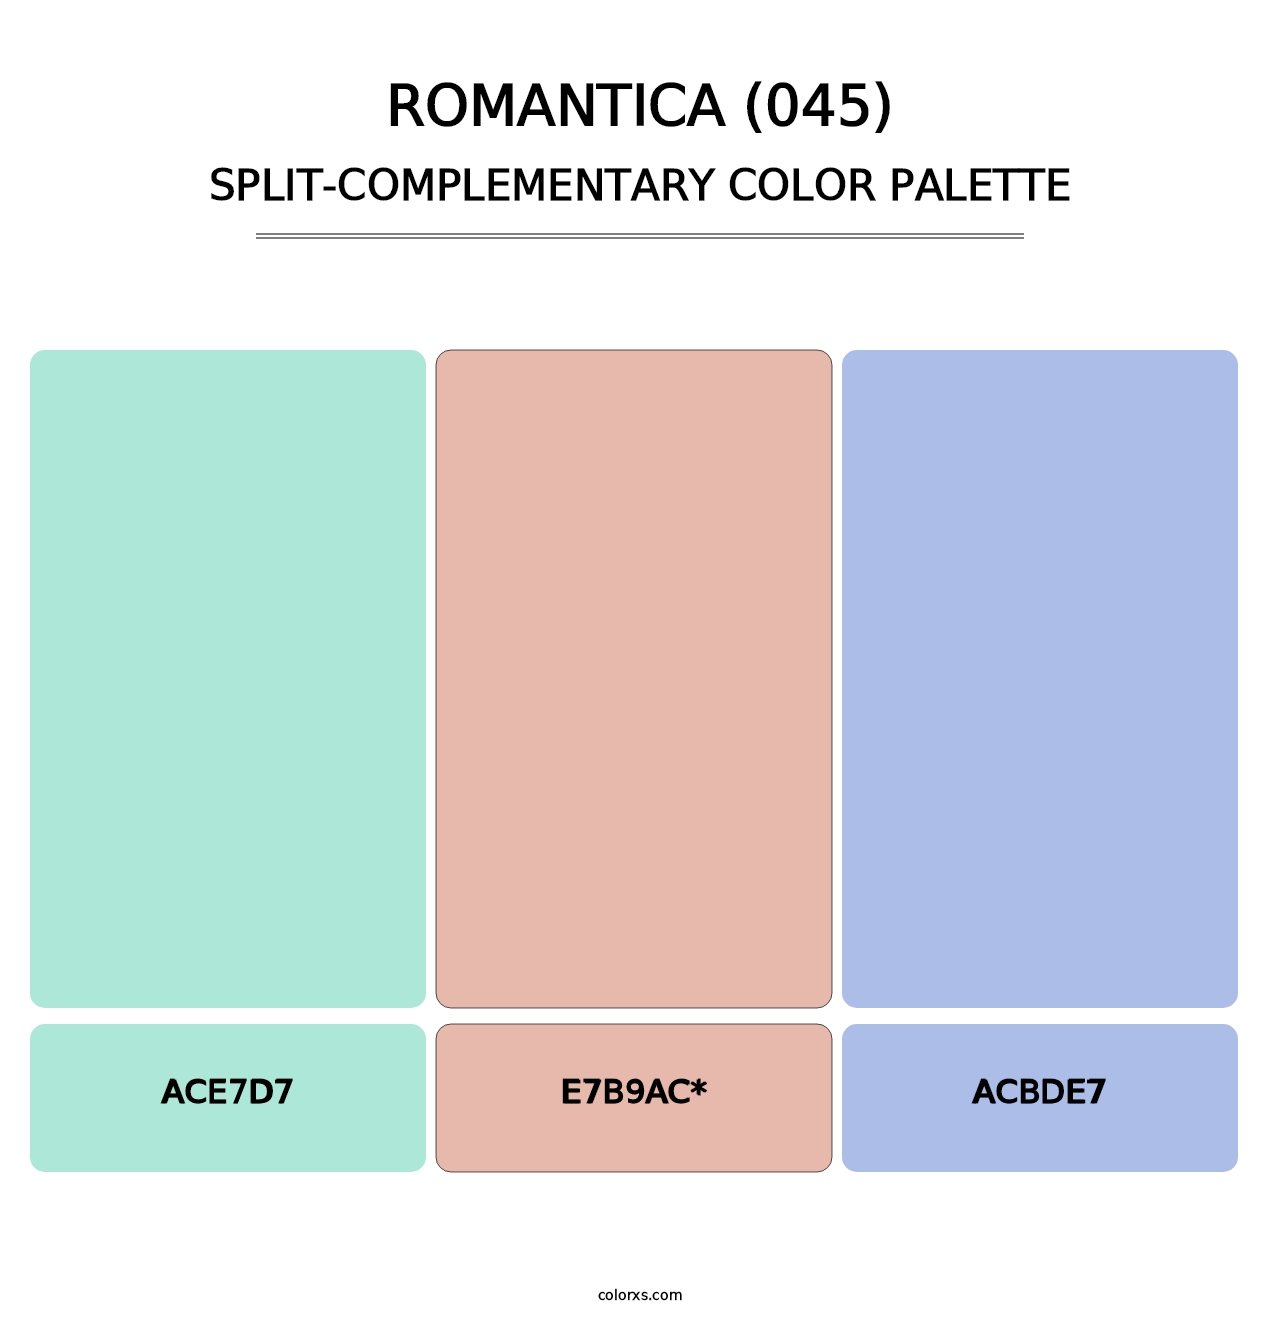 Romantica (045) - Split-Complementary Color Palette